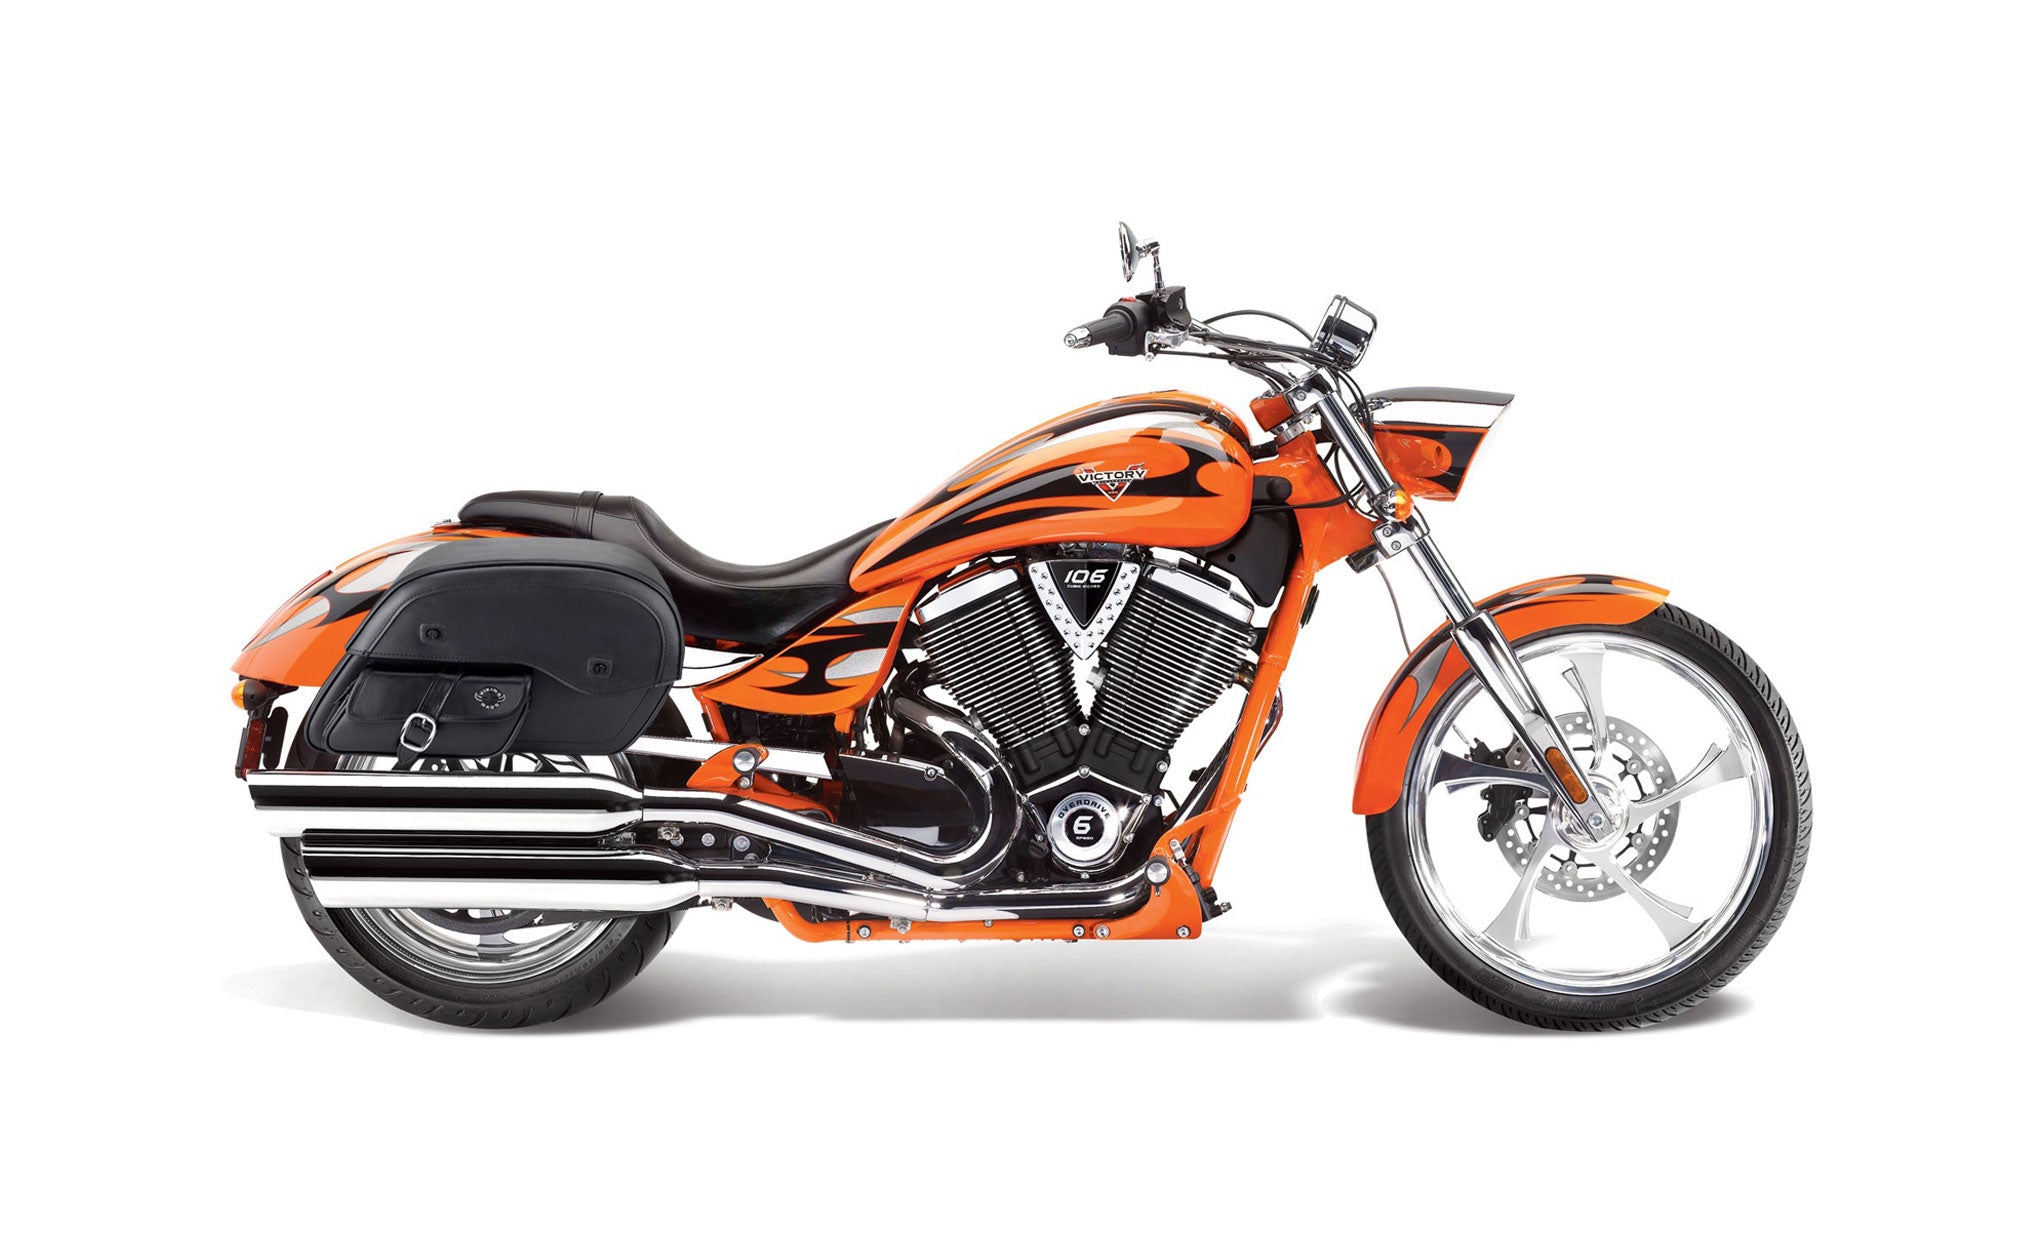 Viking Dweller Side Pocket Large Victory Jackpot Leather Motorcycle Saddlebags on Bike Photo @expand